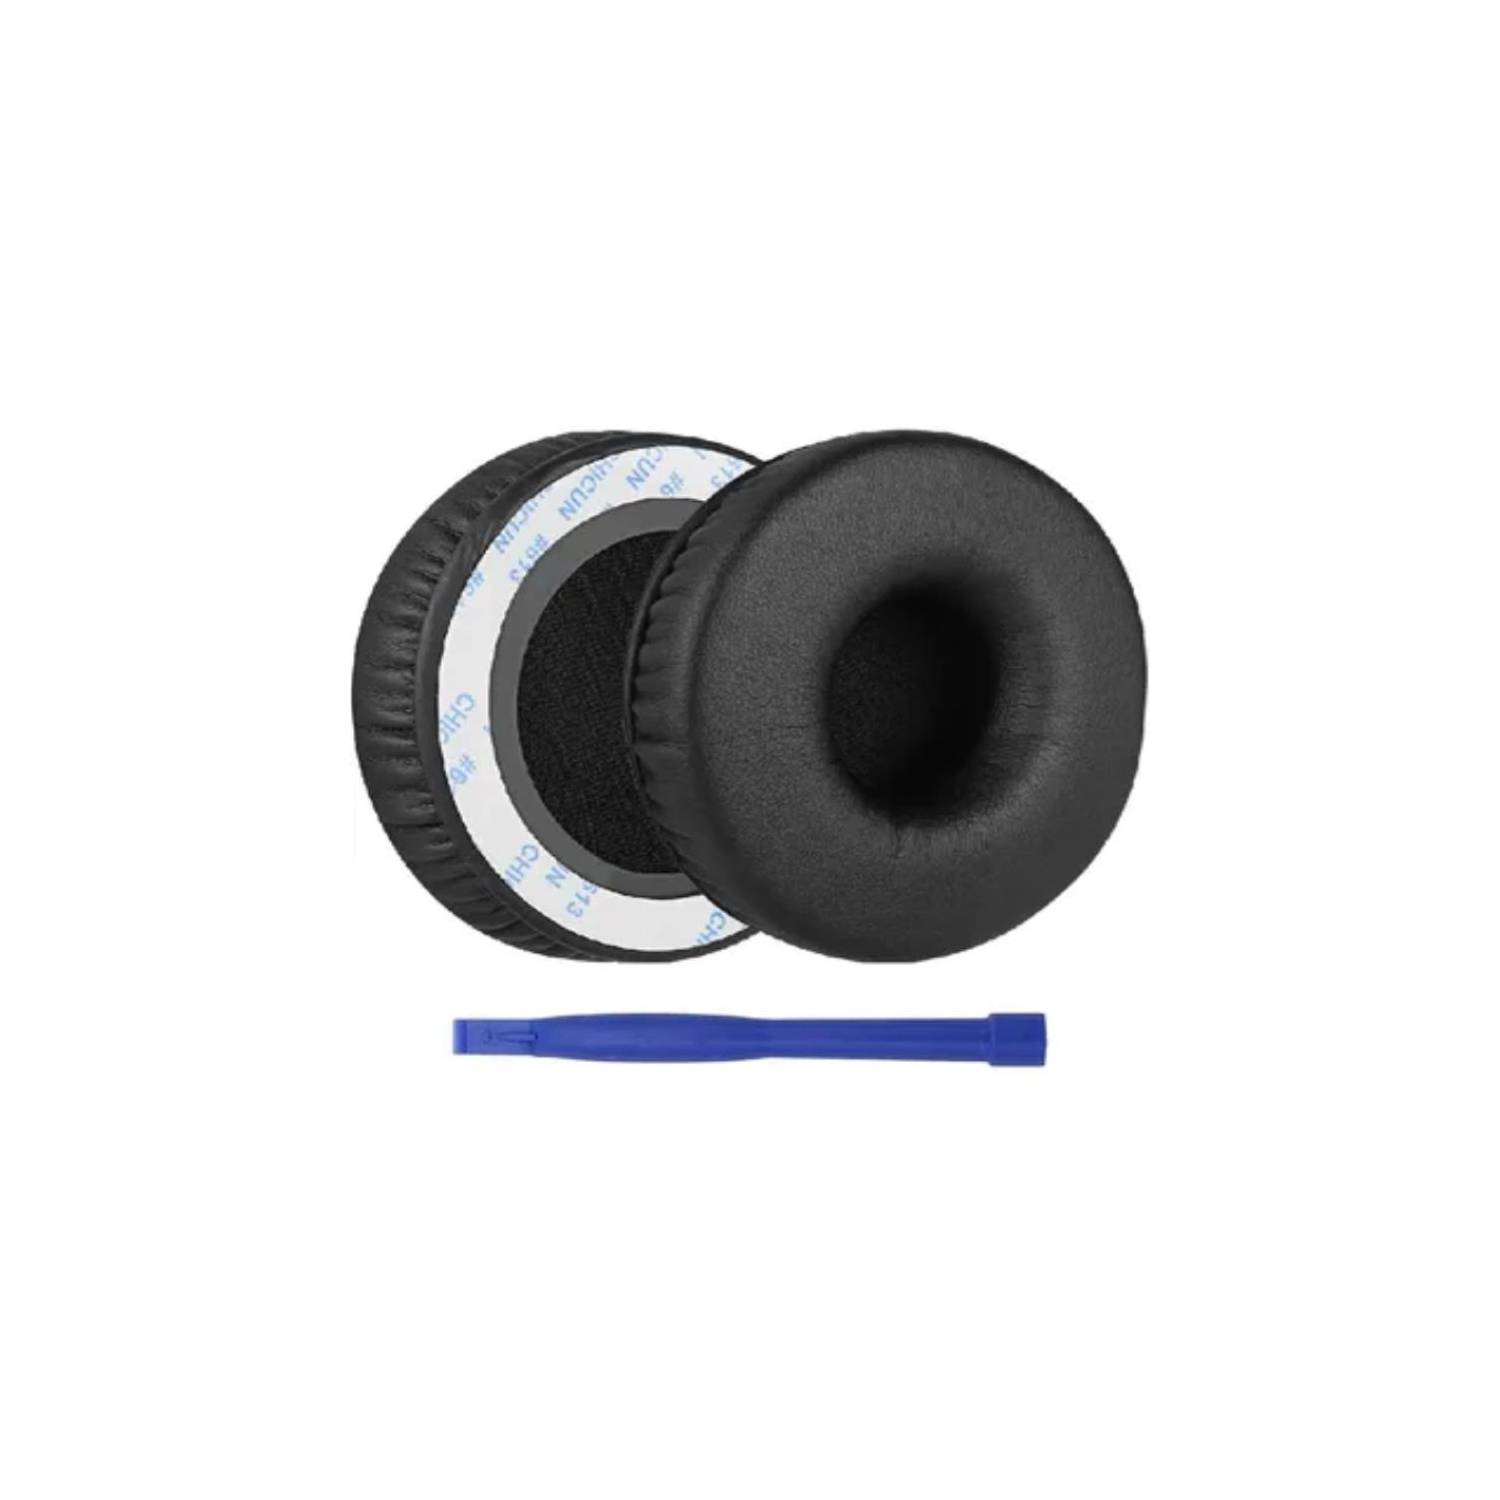 Geekria QuickFit - Almohadillas de repuesto para Sony MDR-XB450, XB450AP,  XB550AP, XB650BT WH-XB700 almohadillas para auriculares, almohadillas para